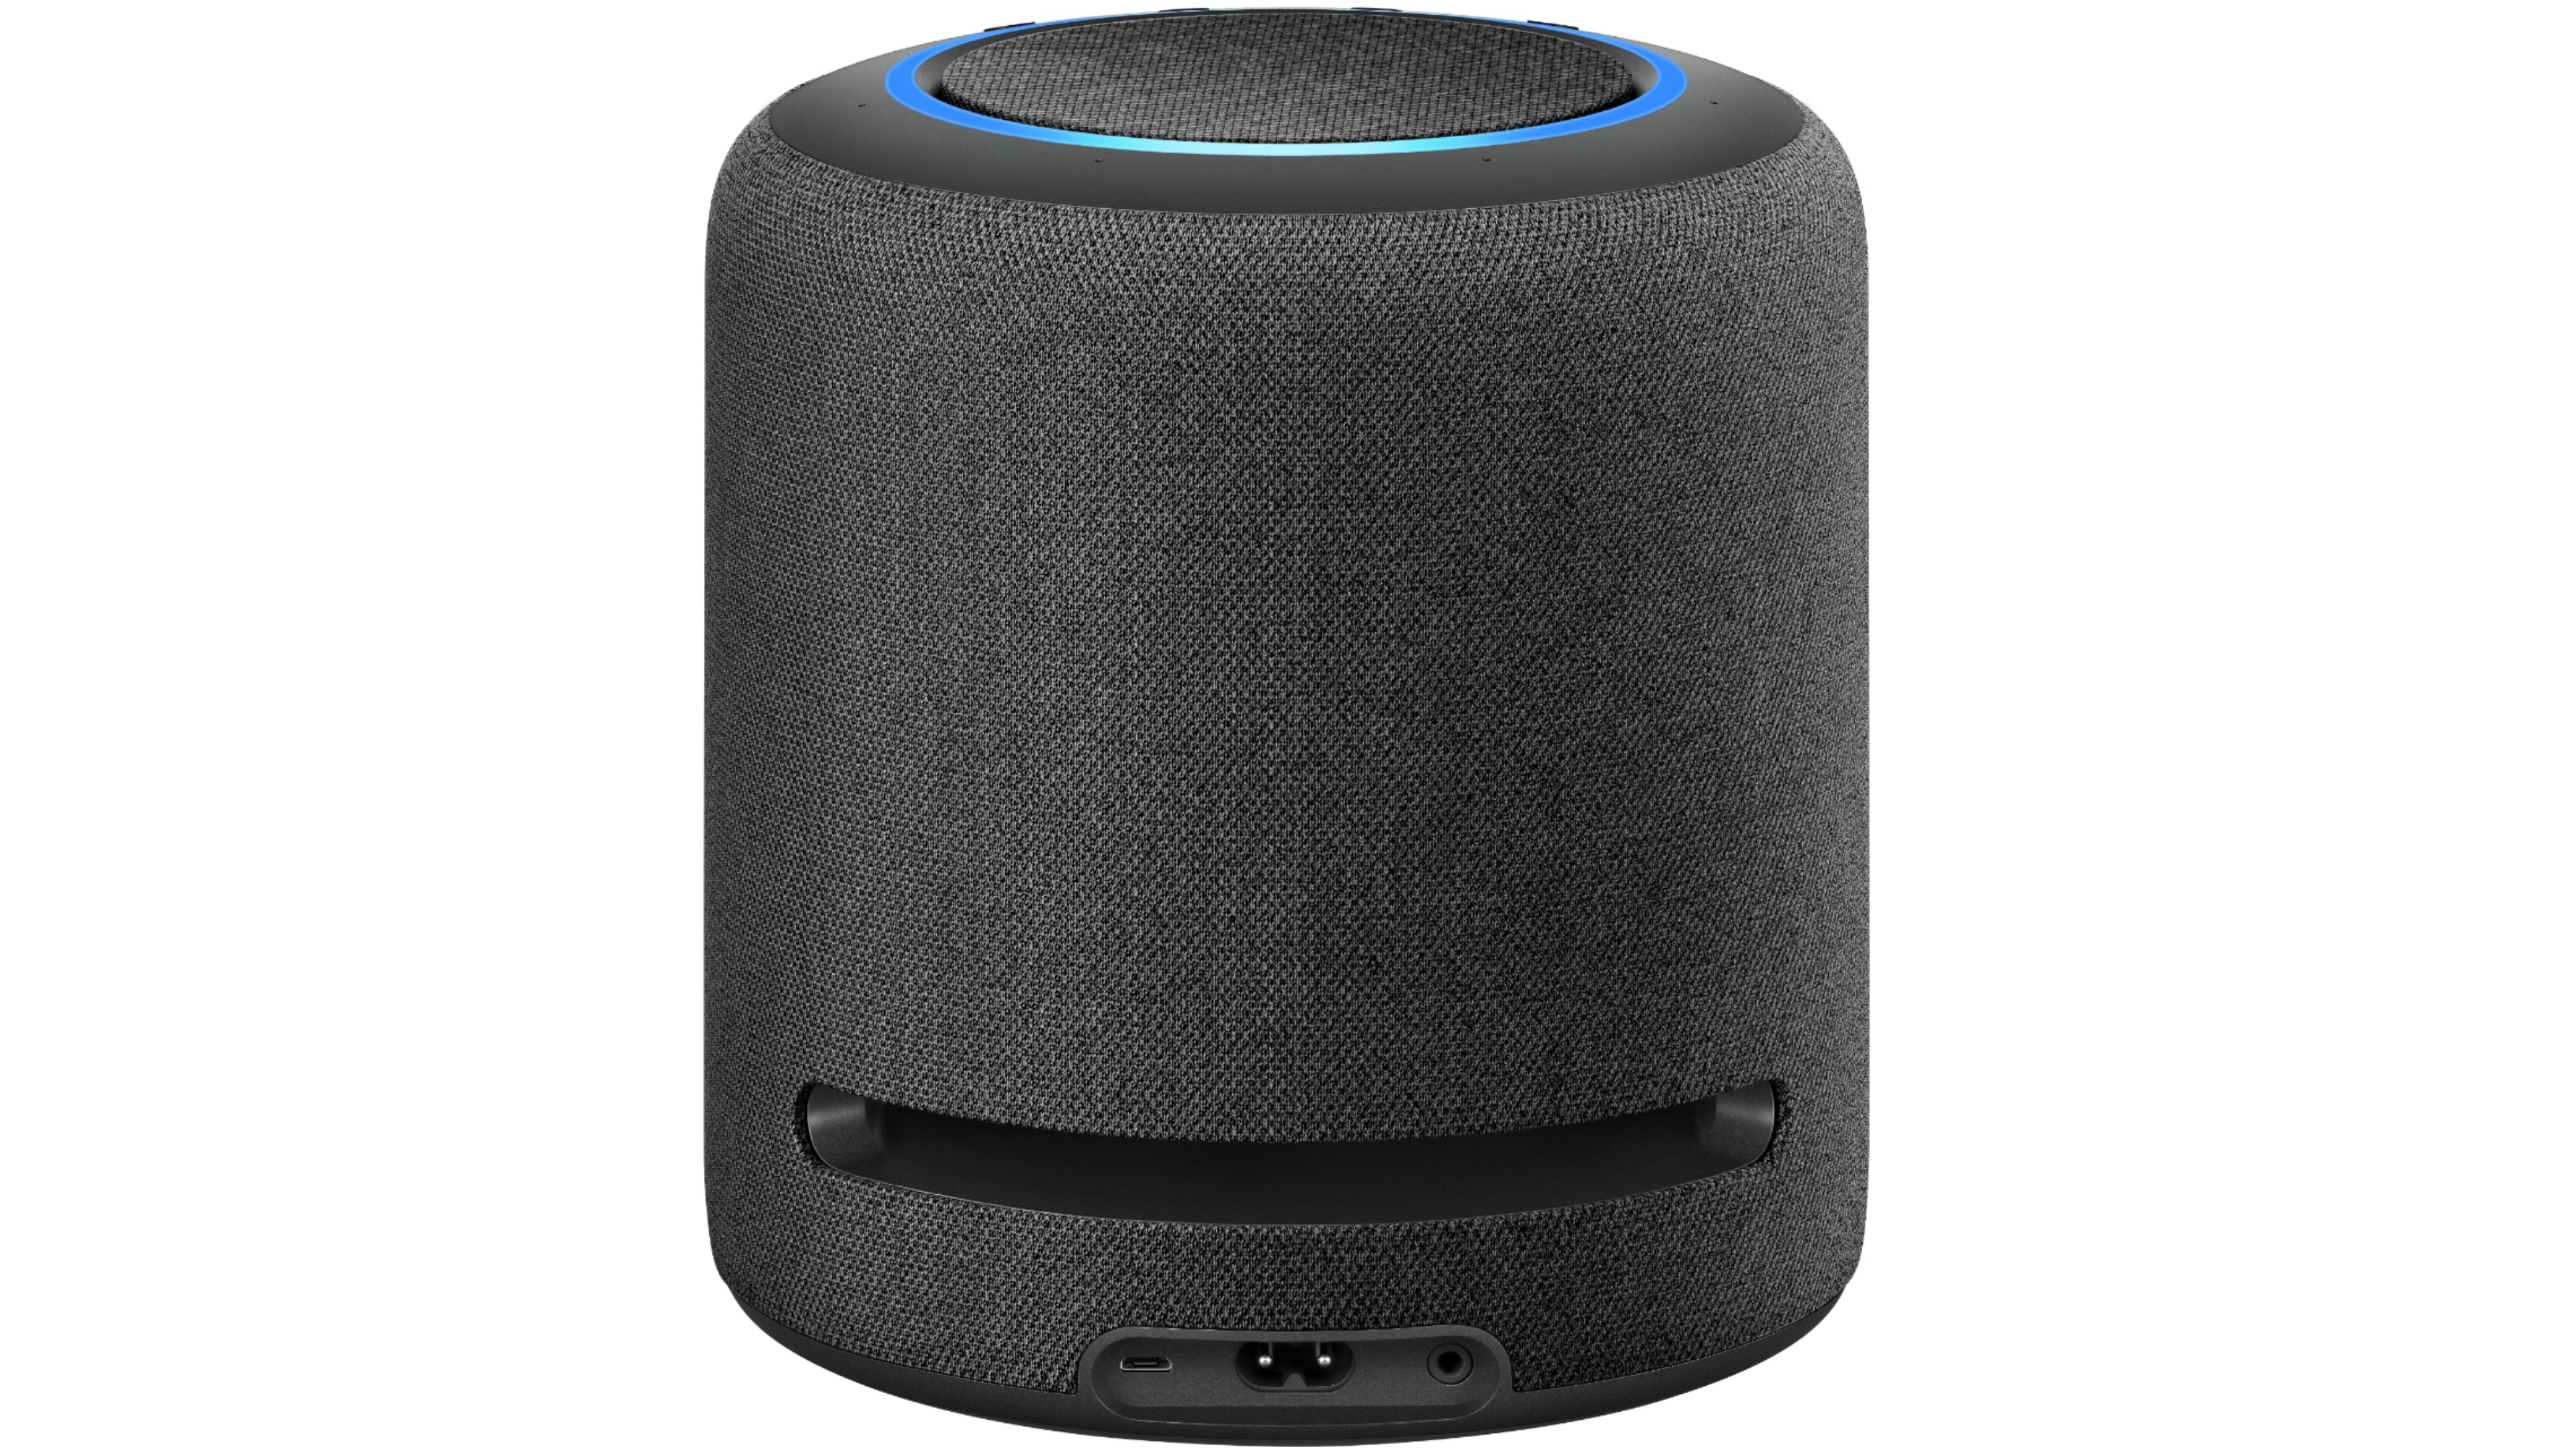 дешевый Amazon Echo предлагает цену продажи